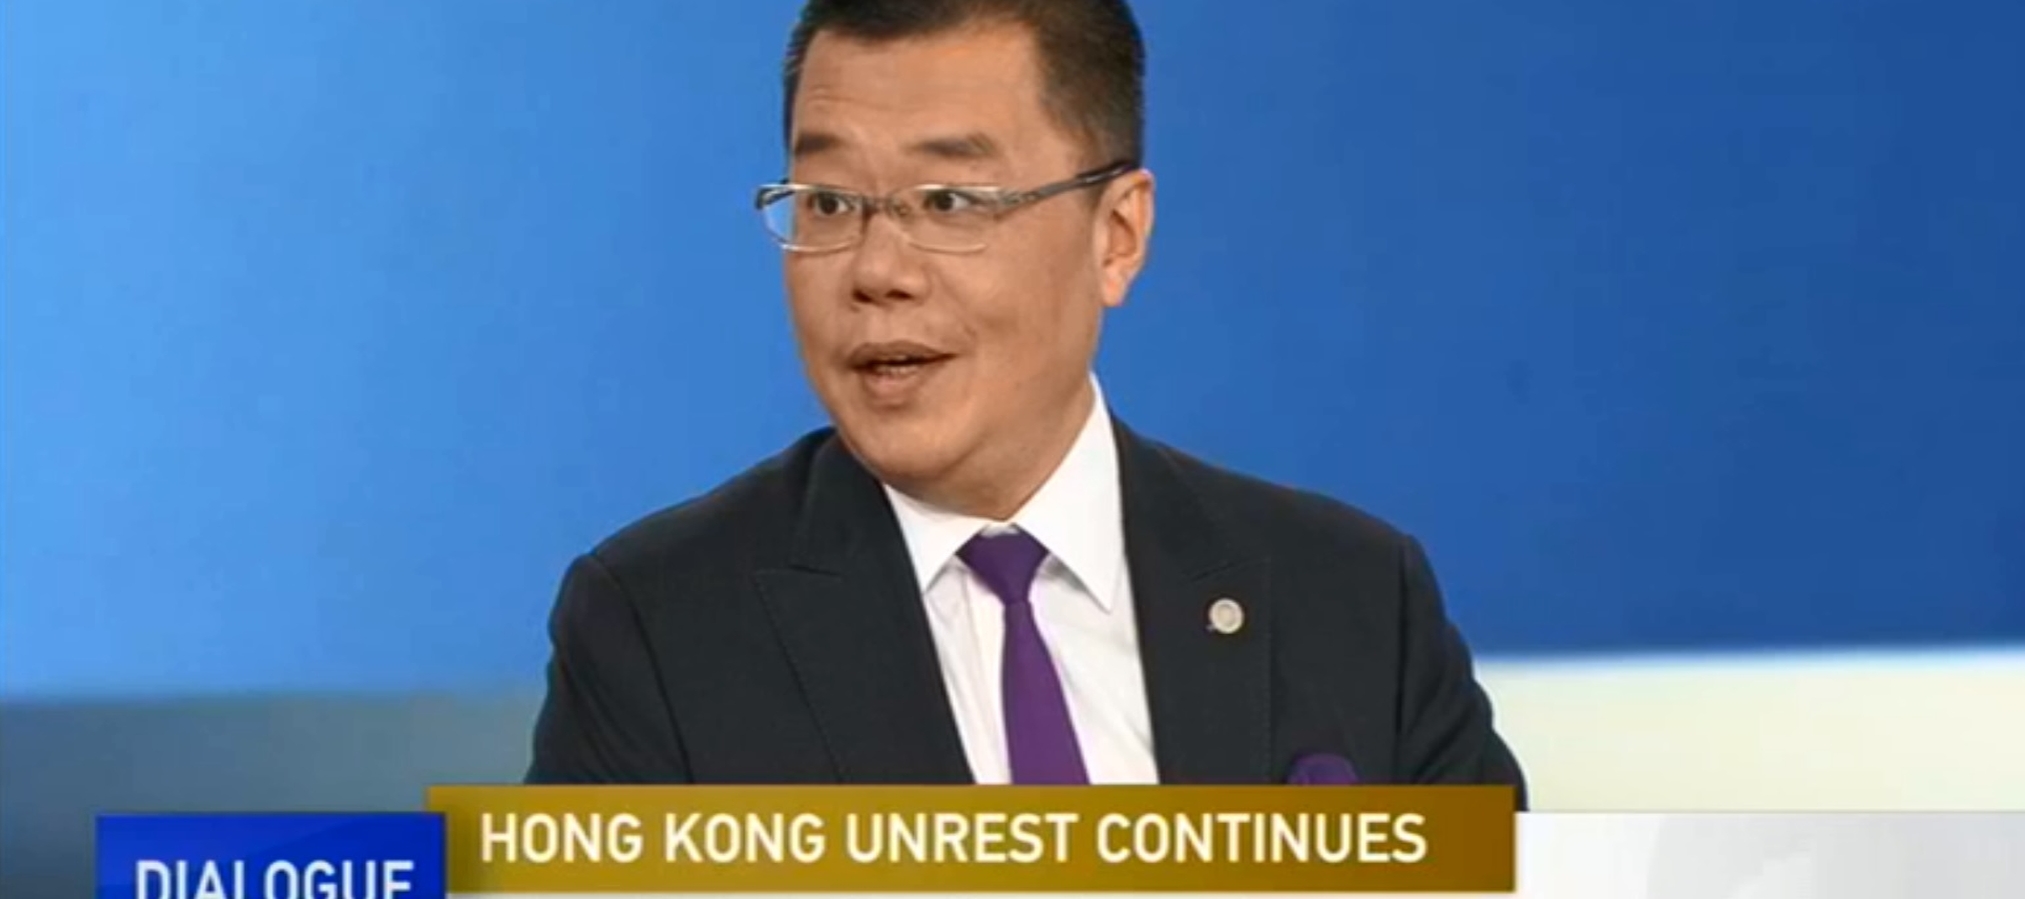 Dialogue with Yang Rui – Hong Kong Unrest Continues